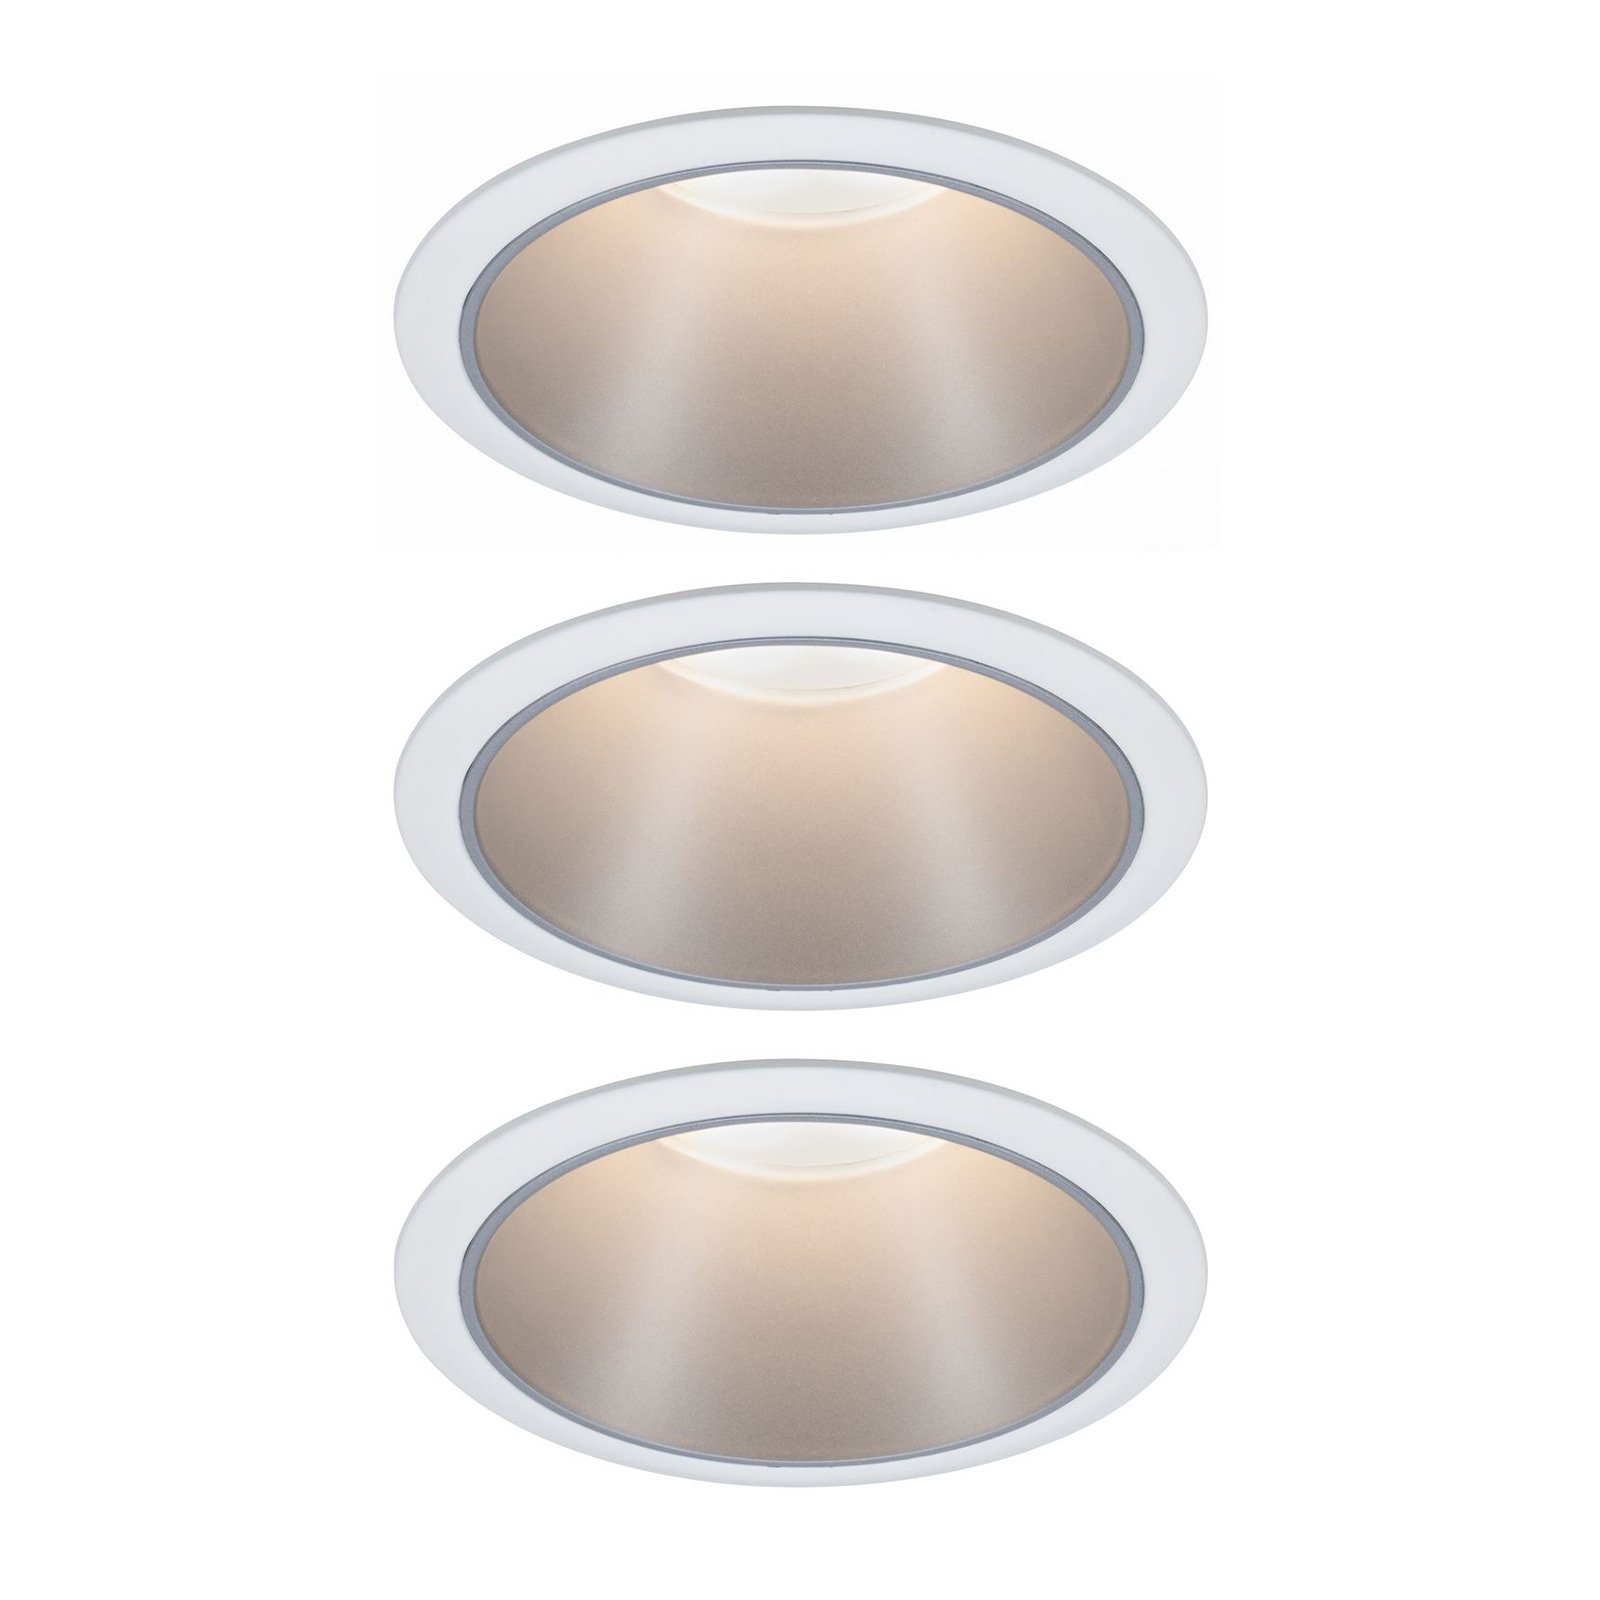 Paulmann Cole LED Spotlight zilver-wit 3per set